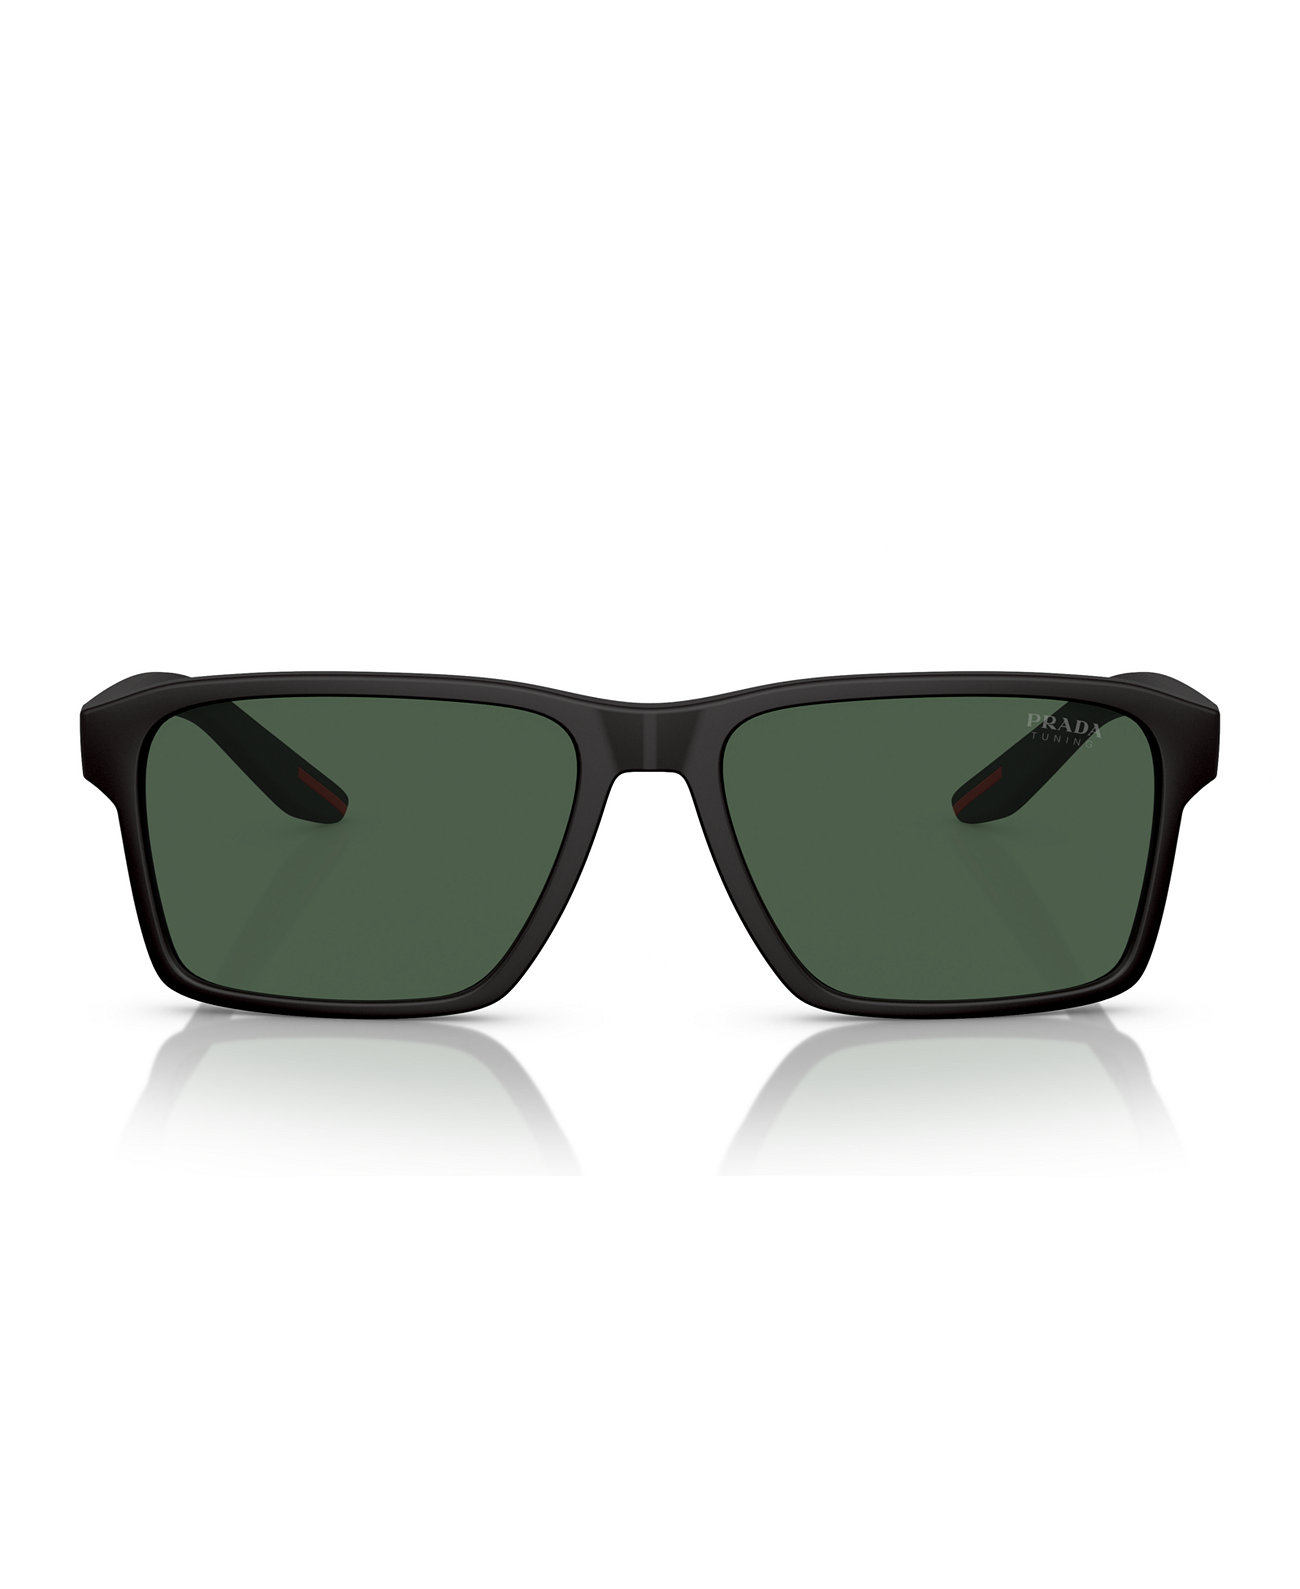 Men's Sunglasses, PS 05YS Prada Linea Rossa